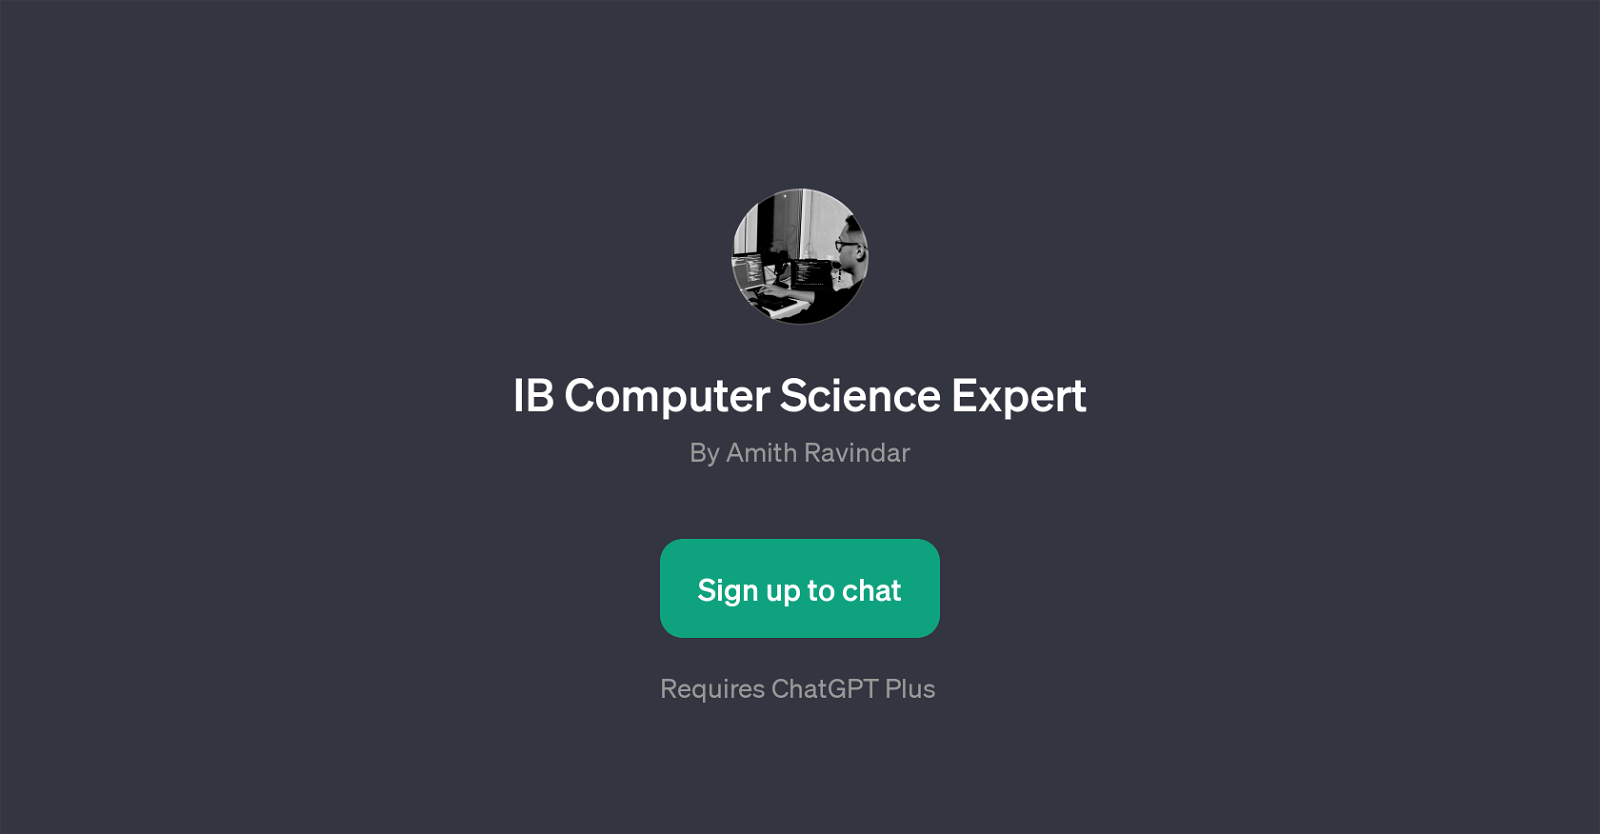 IB Computer Science Expert website